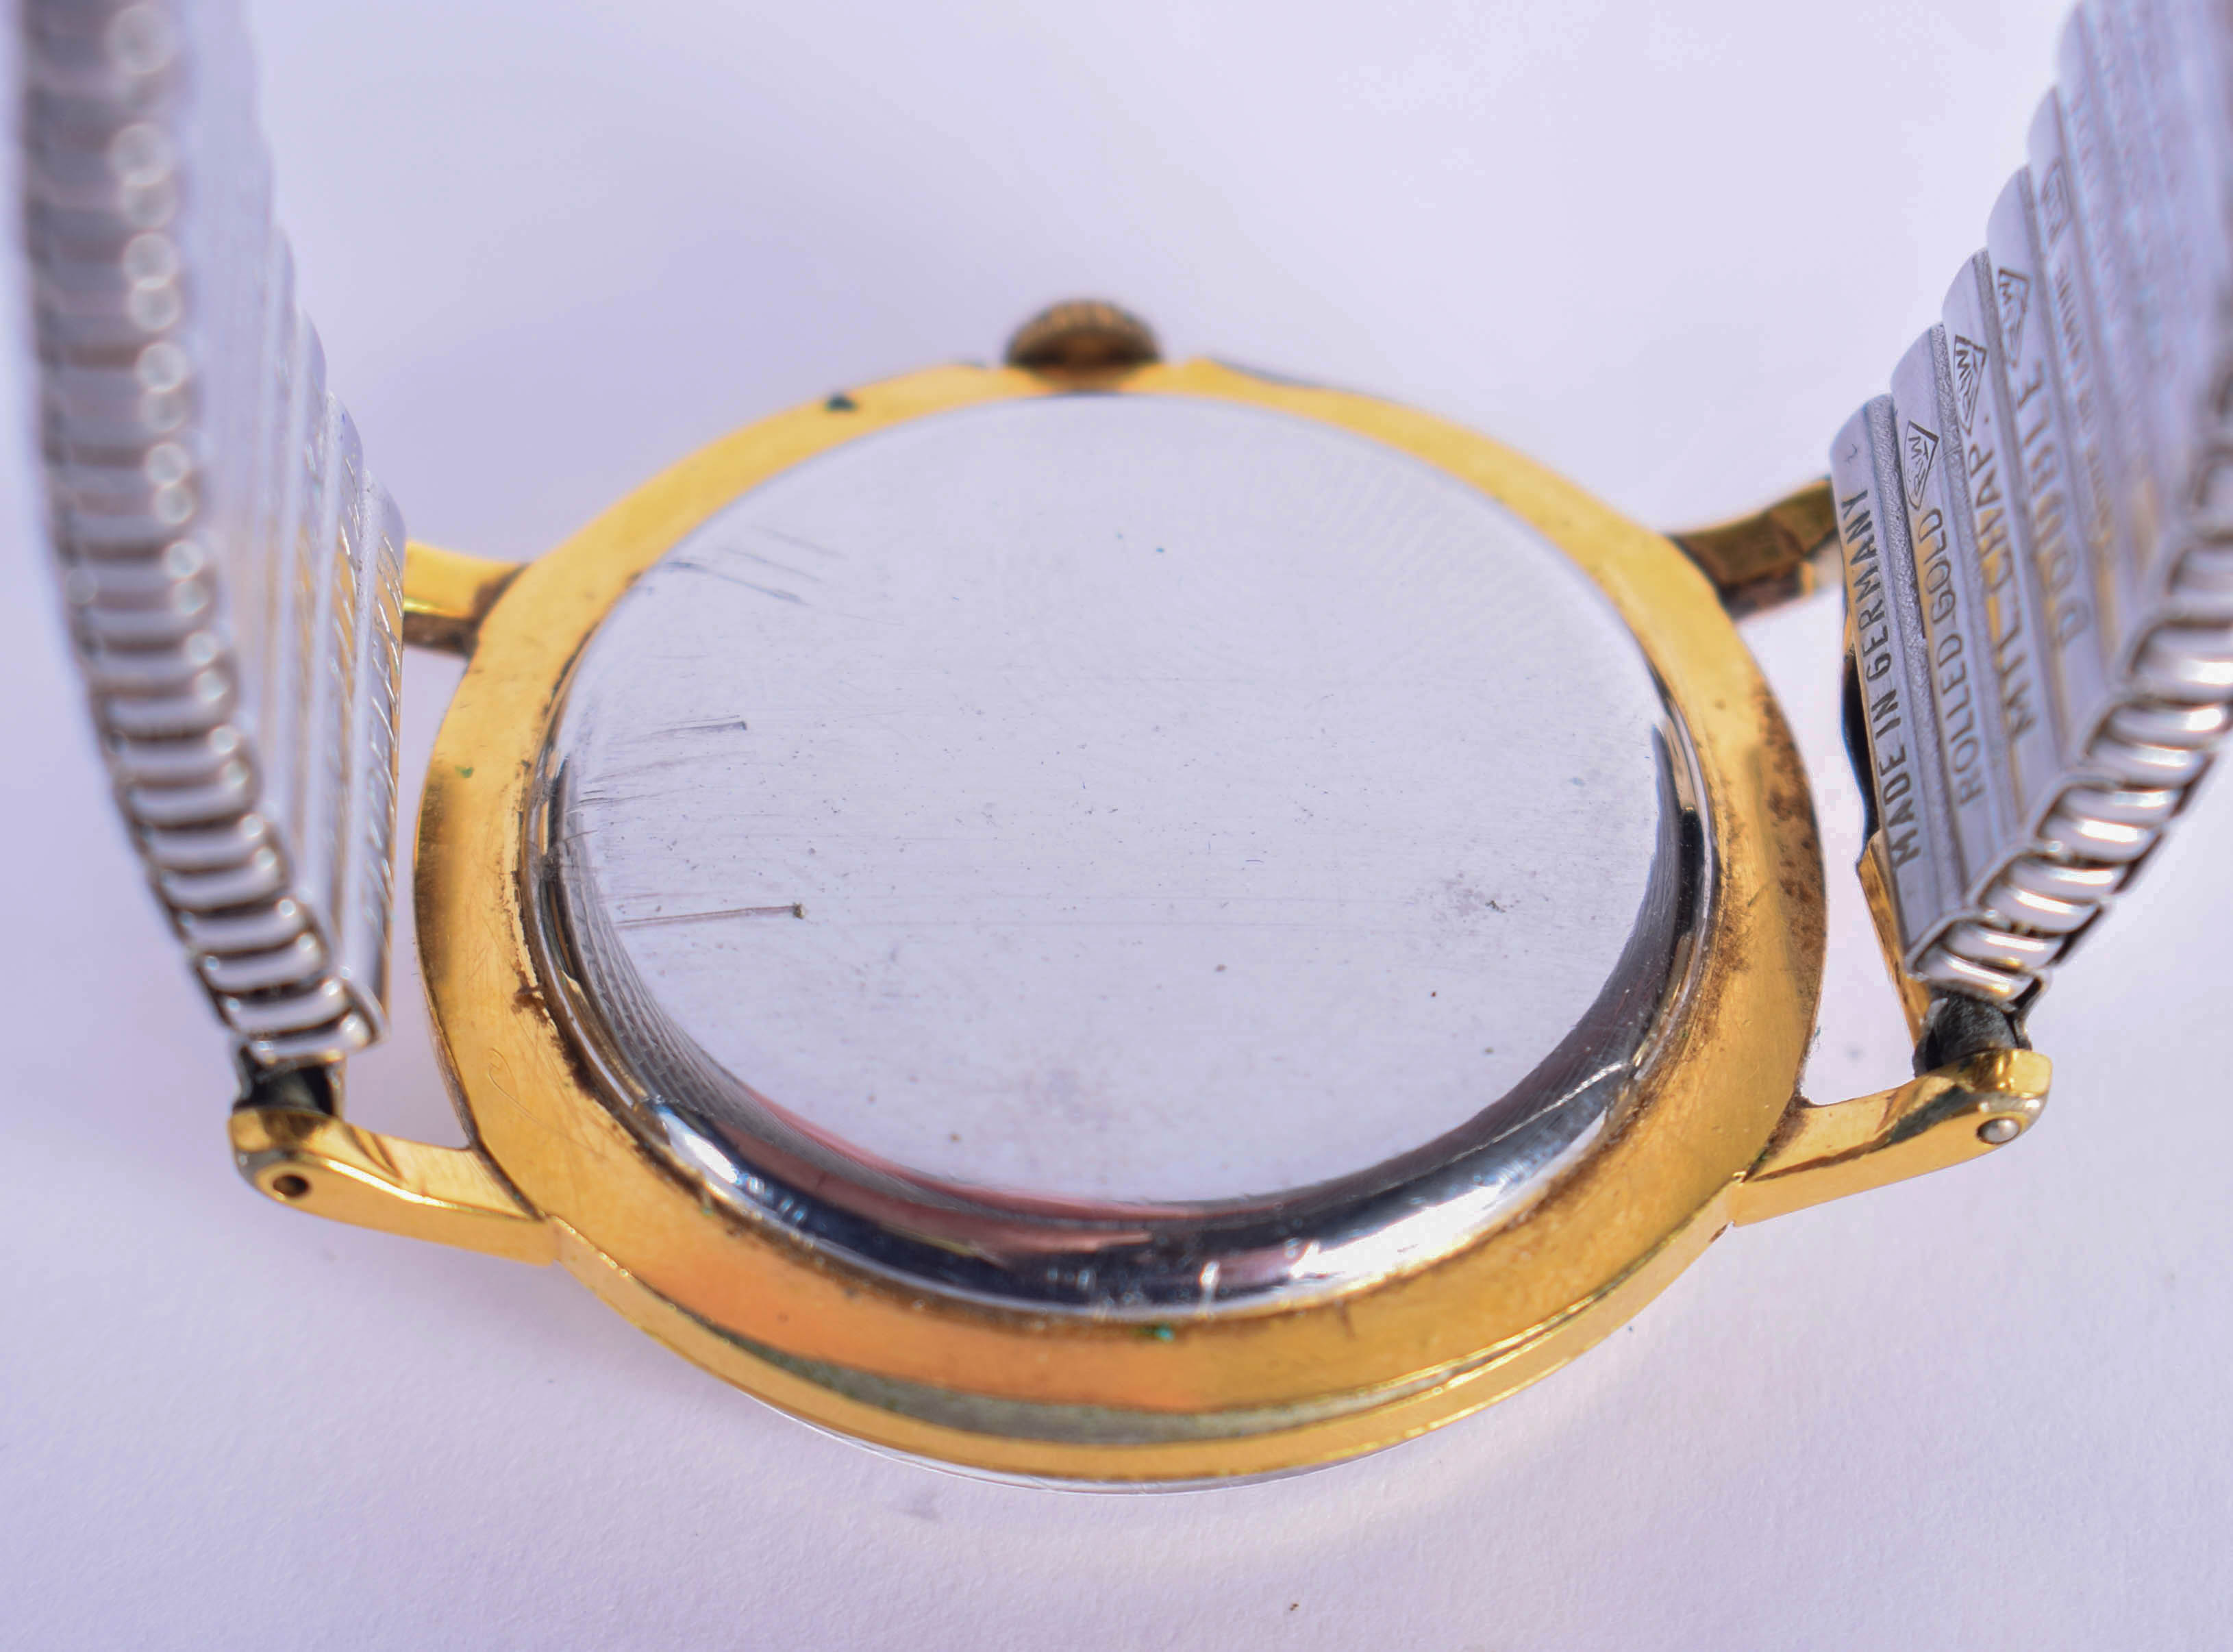 A CYMAFLEX WRISTWATCH. 3 cm diameter. - Image 2 of 2